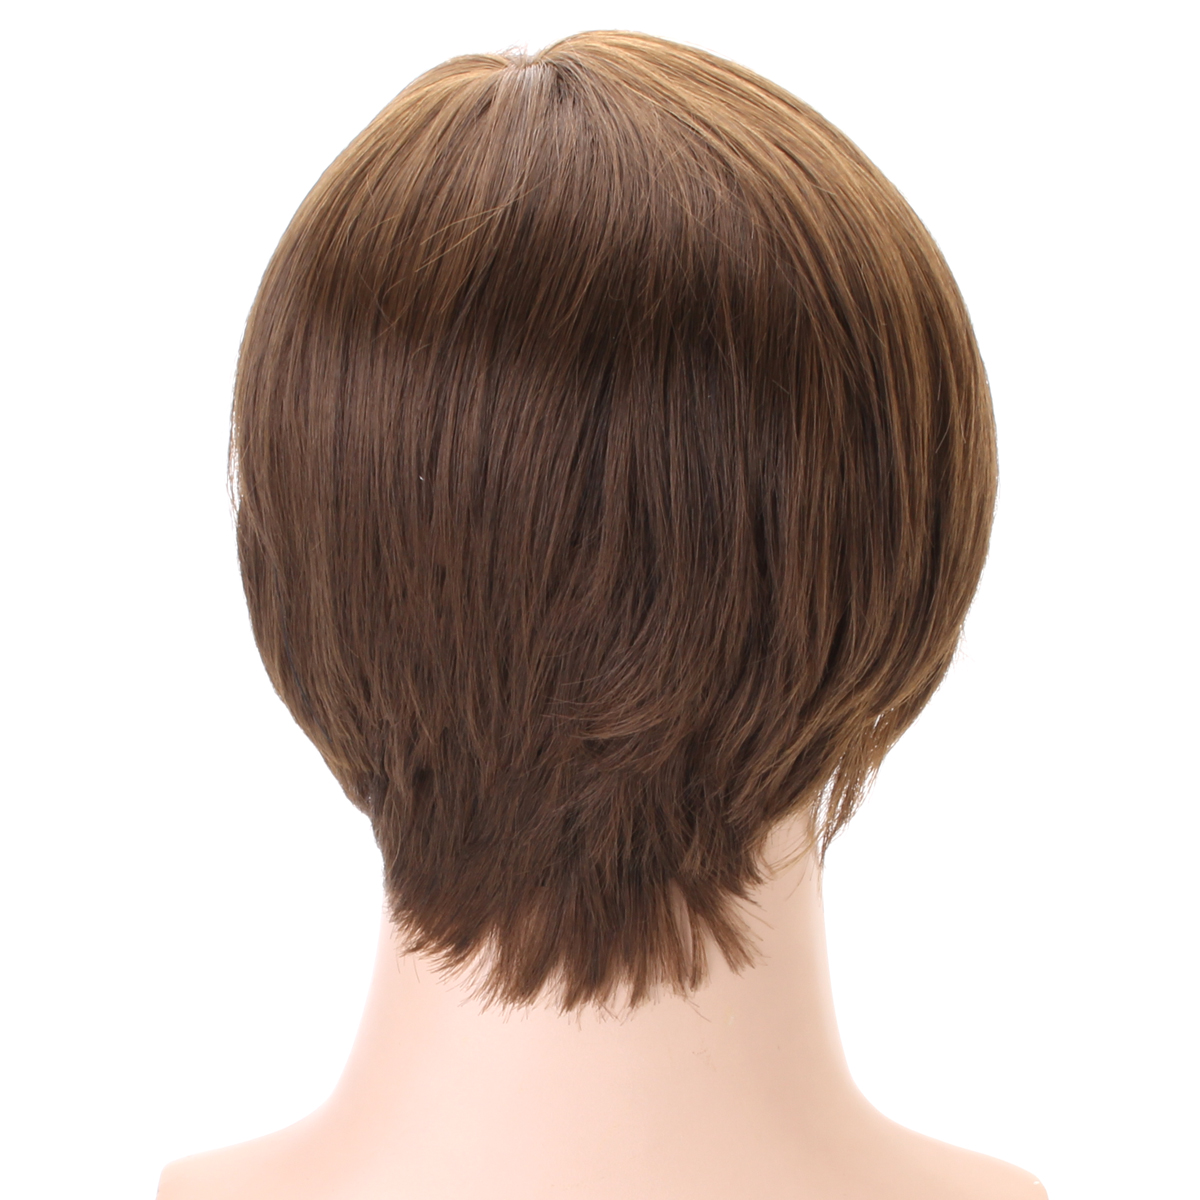 Claybank-Men-Short-Straight-Hair-Natural-Looking-Wig-1322150